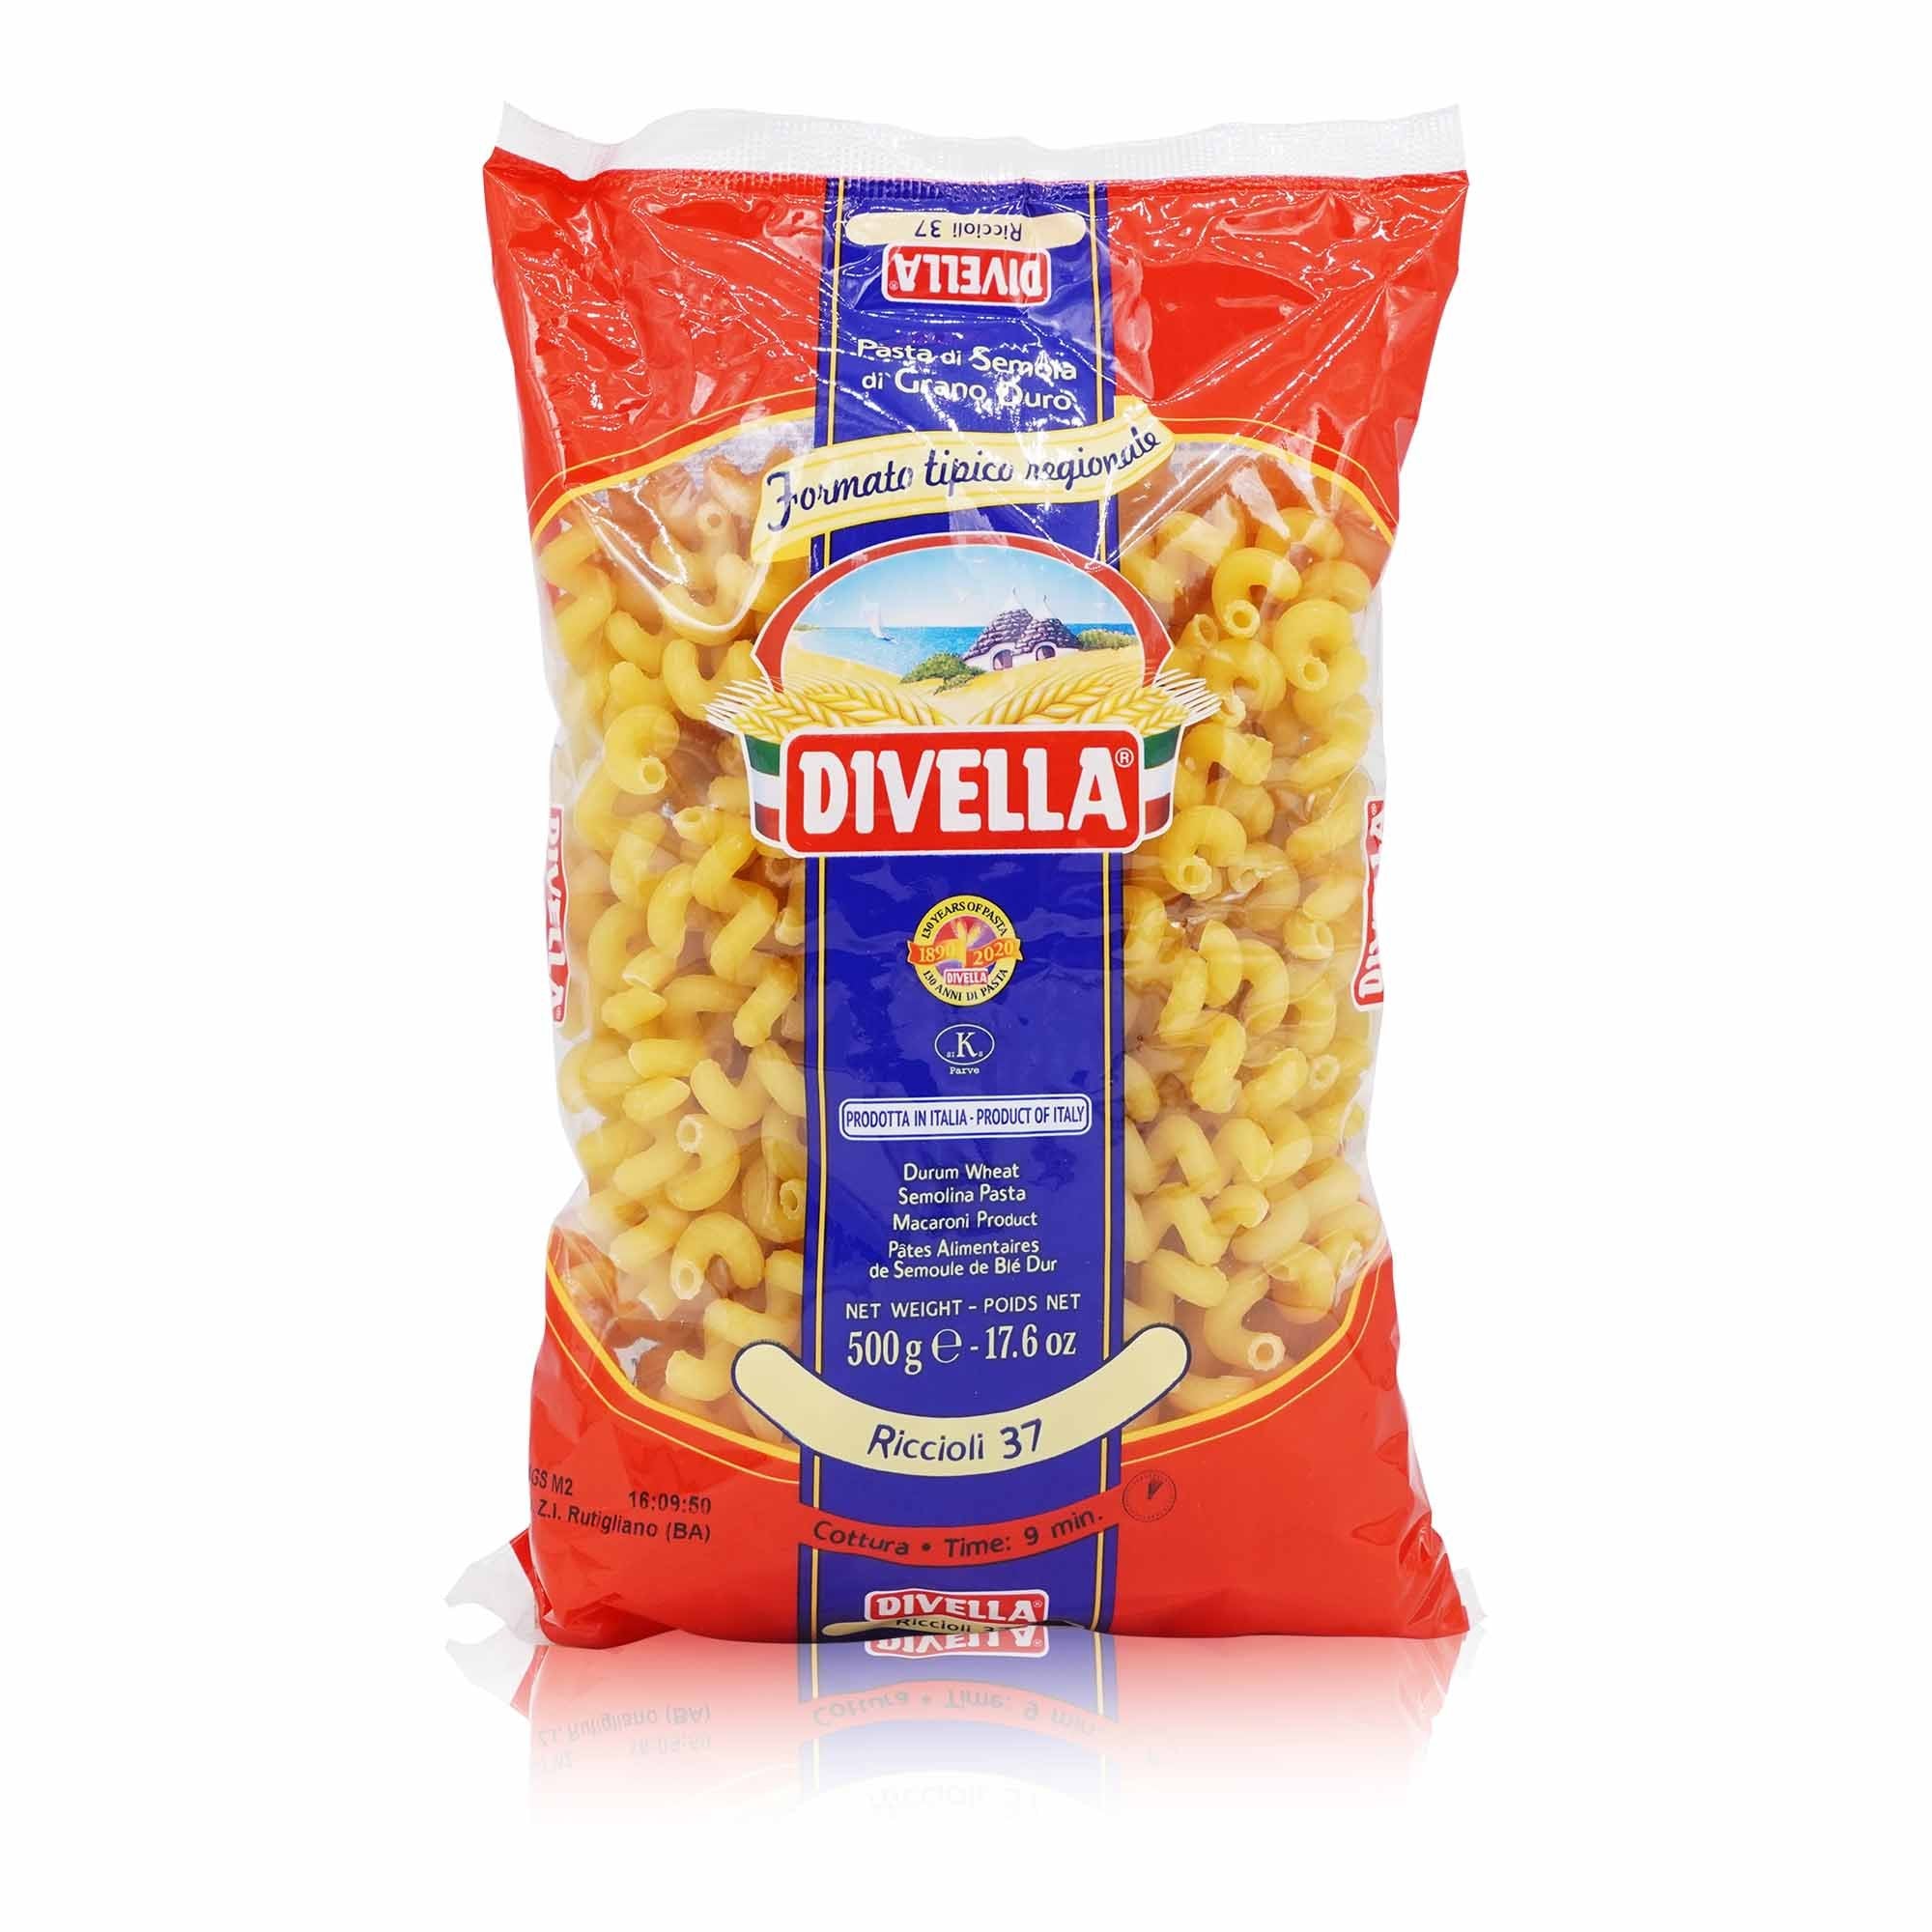 DIVELLA- Riccioli Nr. 37 - 0,5kg - italienisch-einkaufen.de